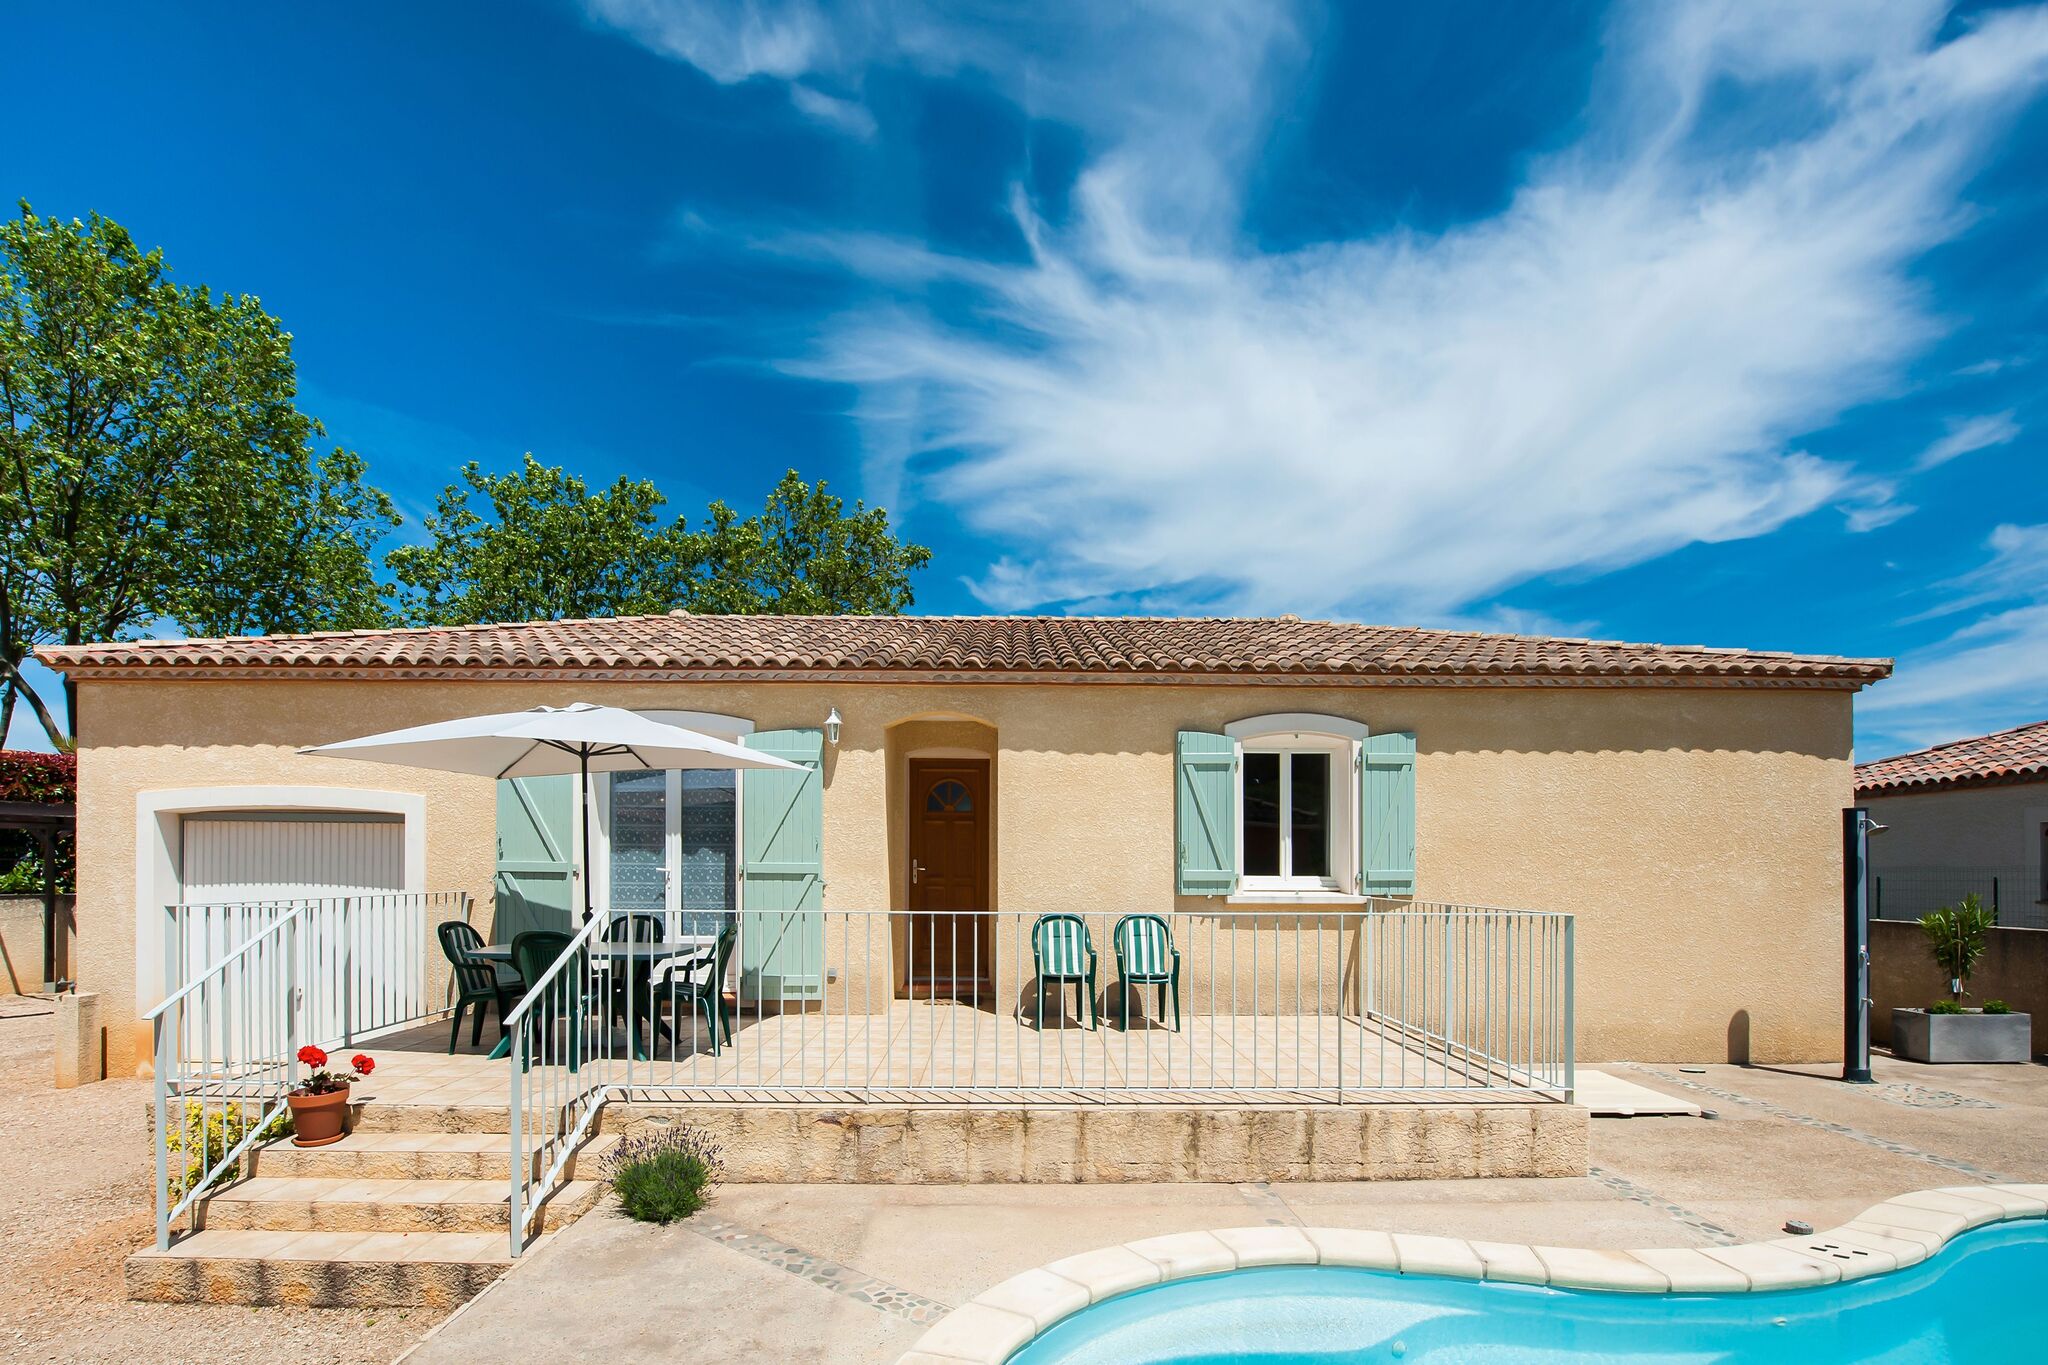 Maison de vacances à Aigues-Vives avec piscine privée